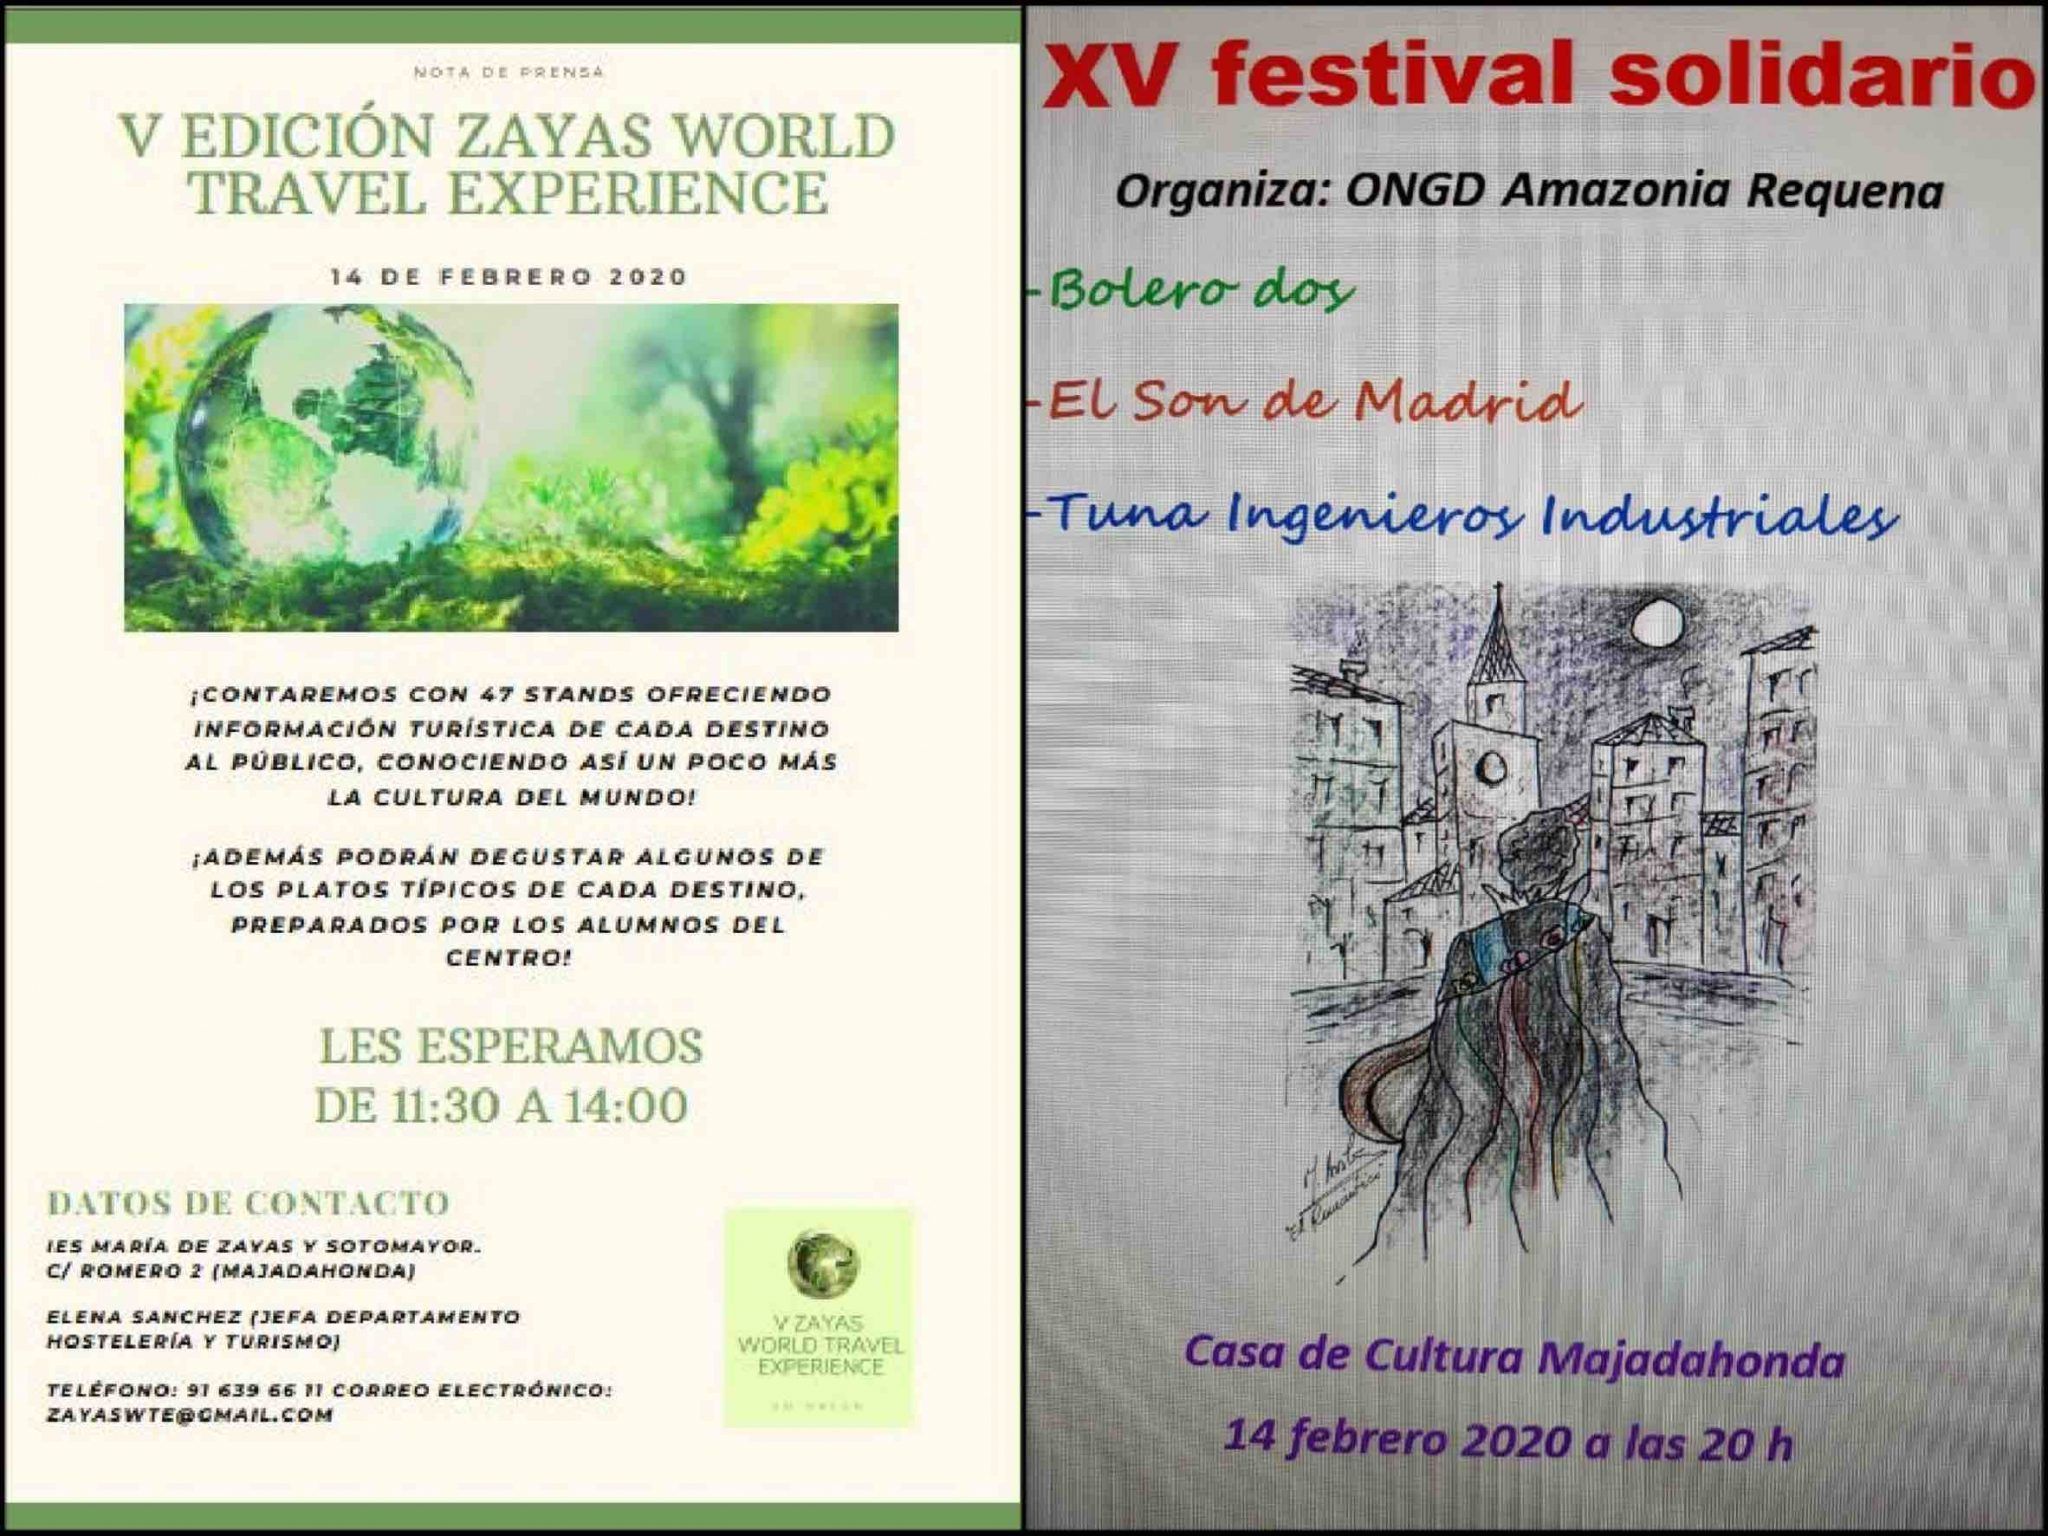 Cultura Majadahonda: gastronomía y turismo en el Zayas World Travel Experience y música solidaria del Festival Amazonia